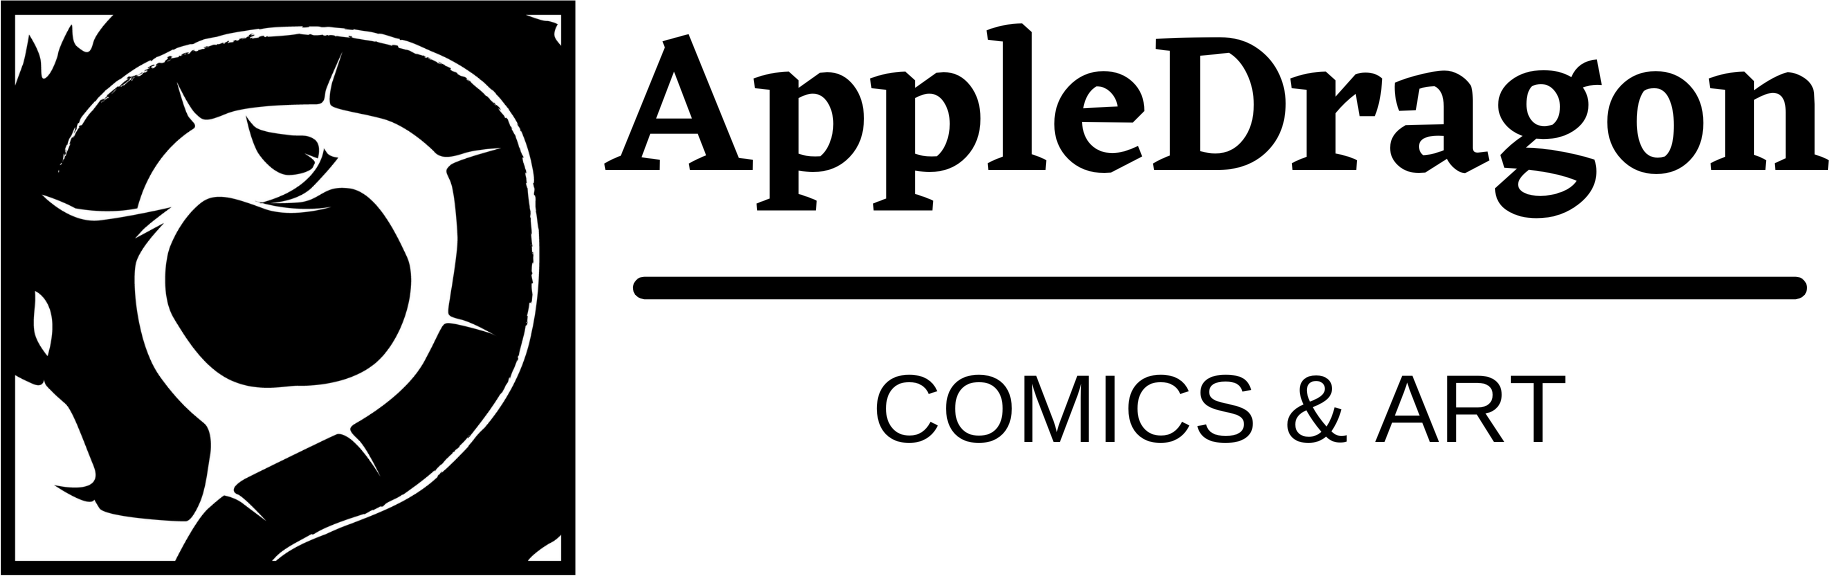 AppleDragon Comics & Art